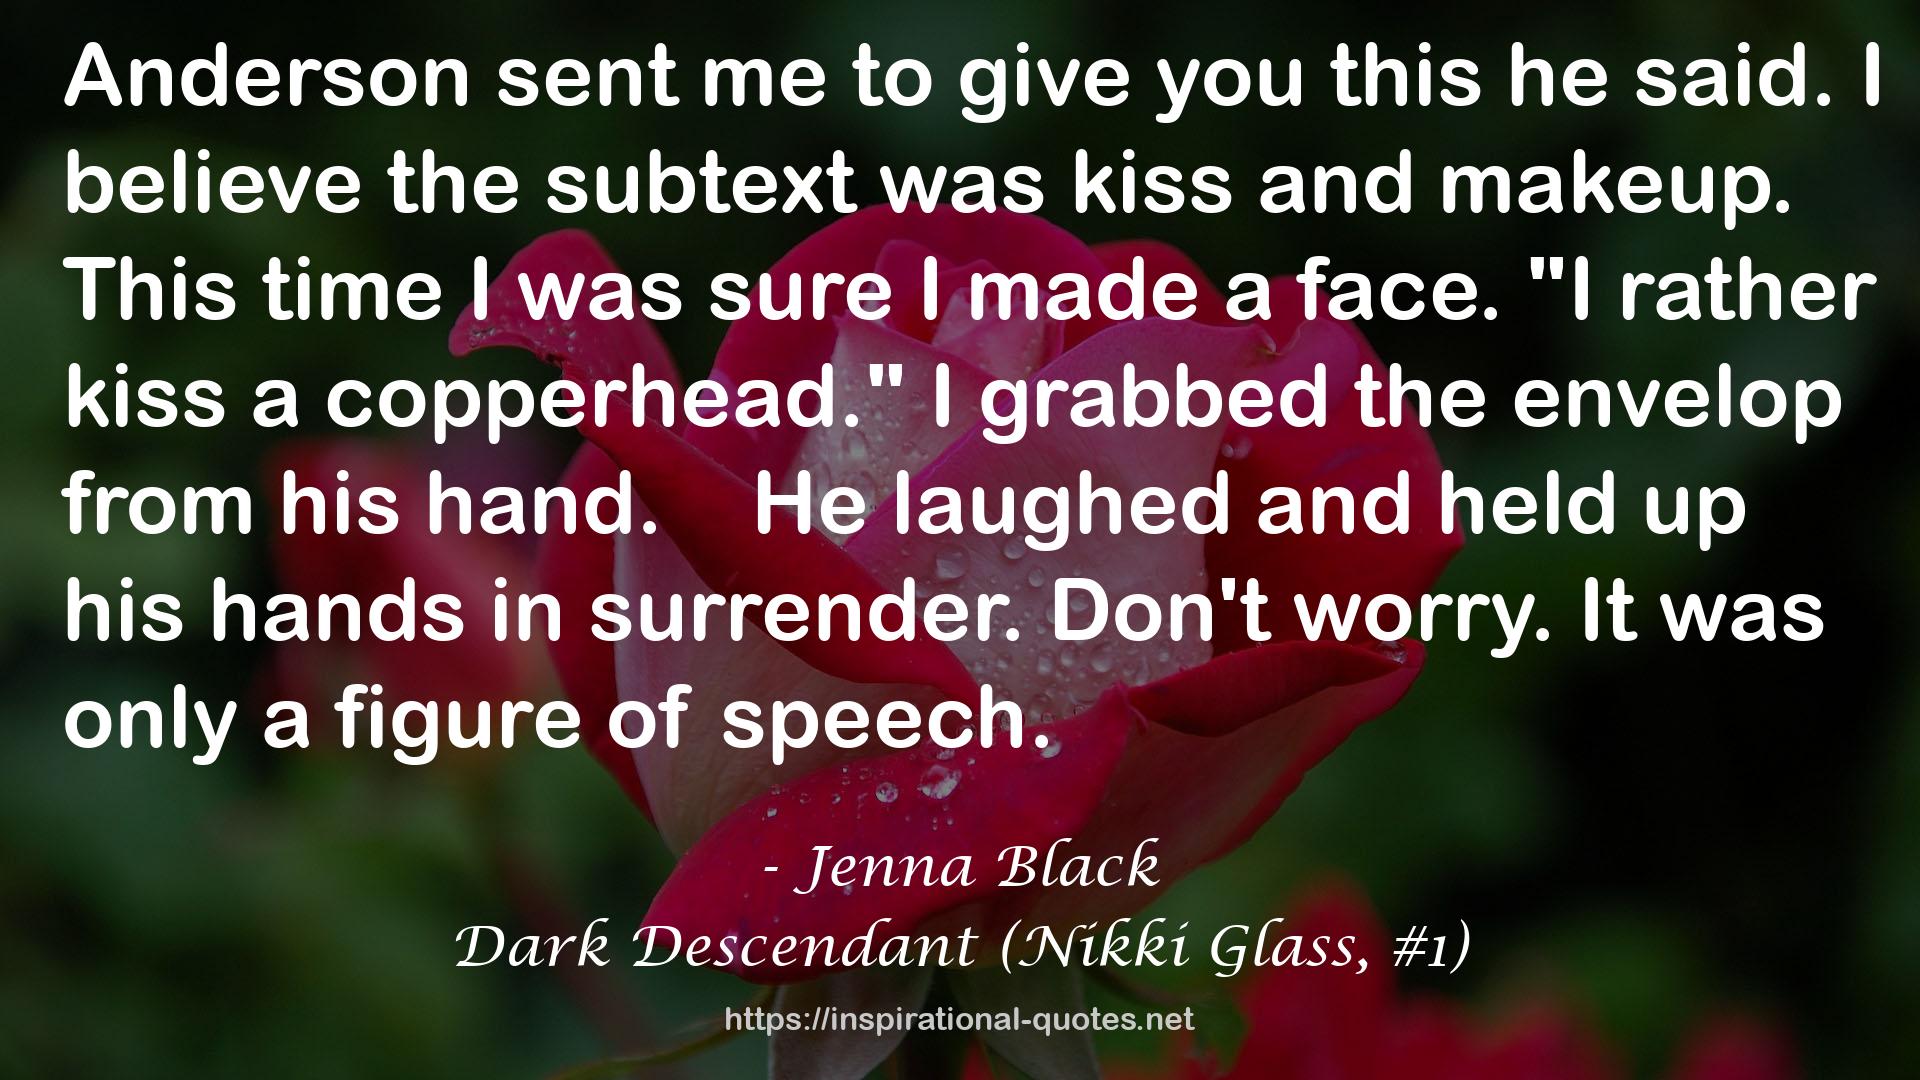 Dark Descendant (Nikki Glass, #1) QUOTES